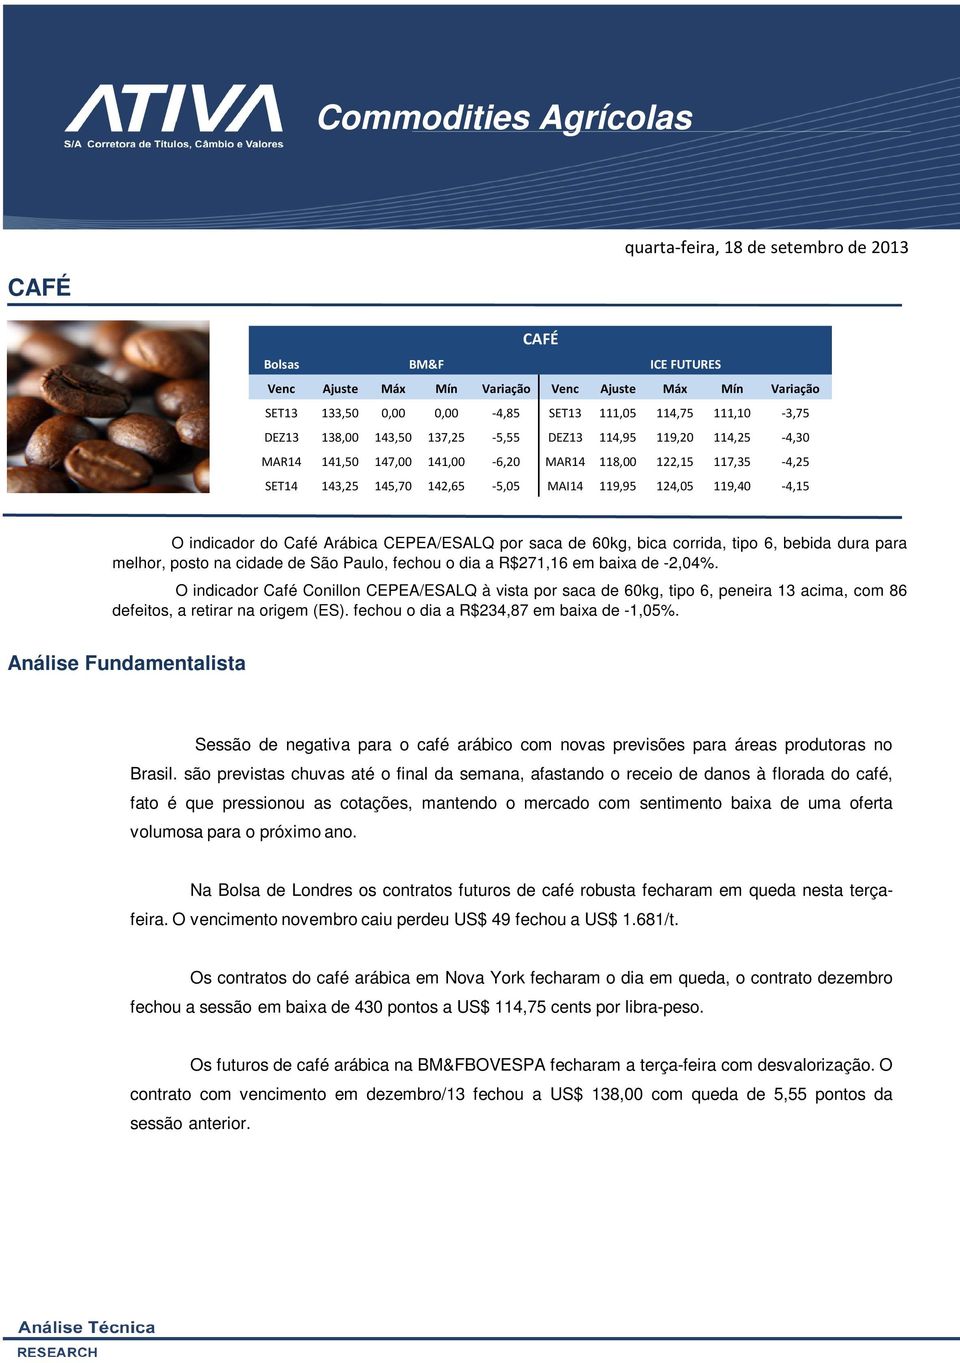 119,40-4,15 O indicador do Café Arábica CEPEA/ESALQ por saca de 60kg, bica corrida, tipo 6, bebida dura para melhor, posto na cidade de São Paulo, fechou o dia a R$271,16 em baixa de -2,04%.